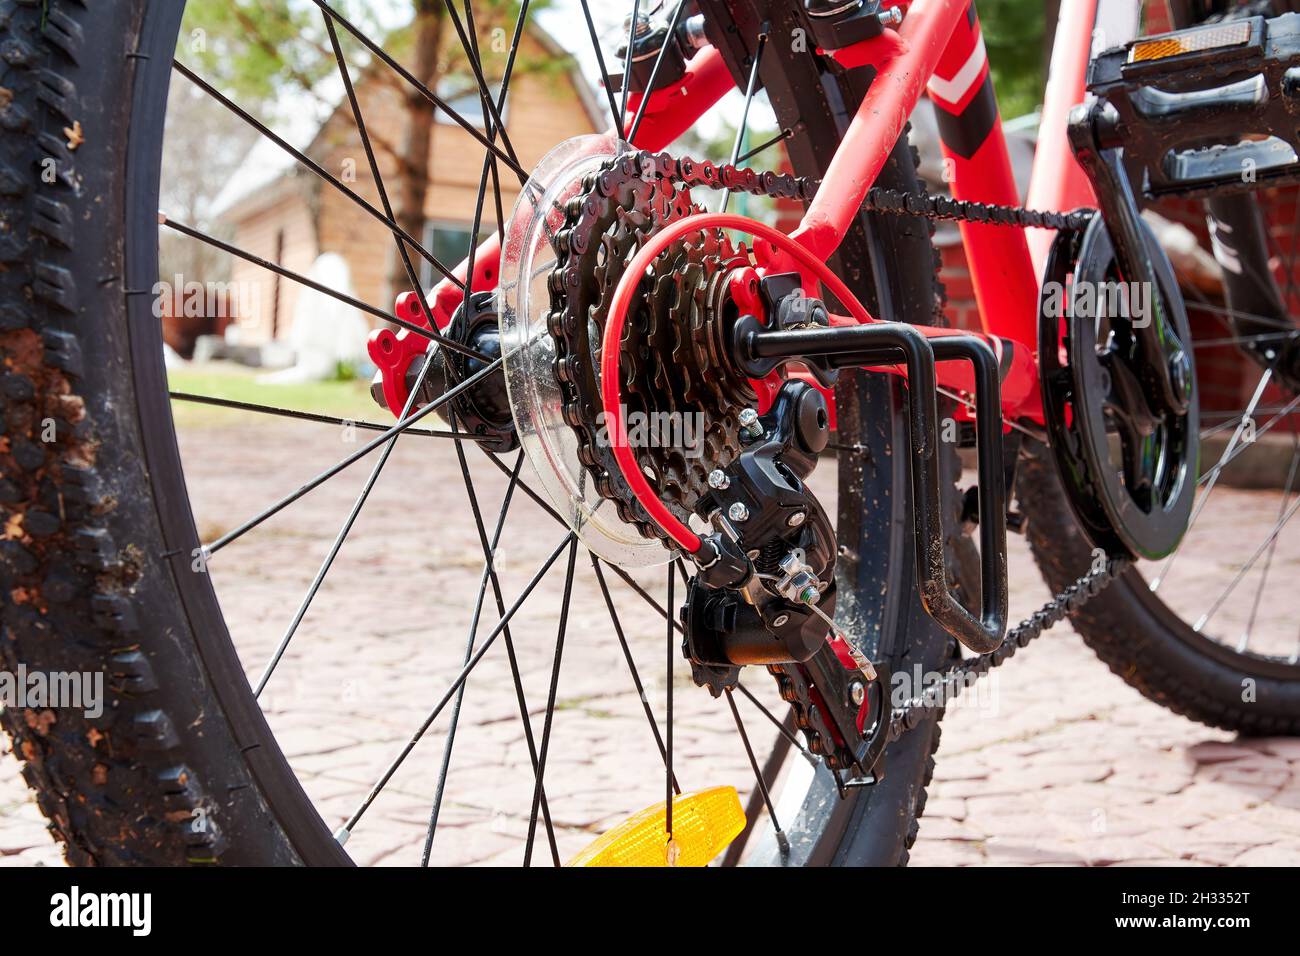 Vue arrière du vélo de montagne rouge restant sur la cour et prêt pour la randonnée sauvage.Thème et arrière-plans des activités sportives et de loisirs Banque D'Images